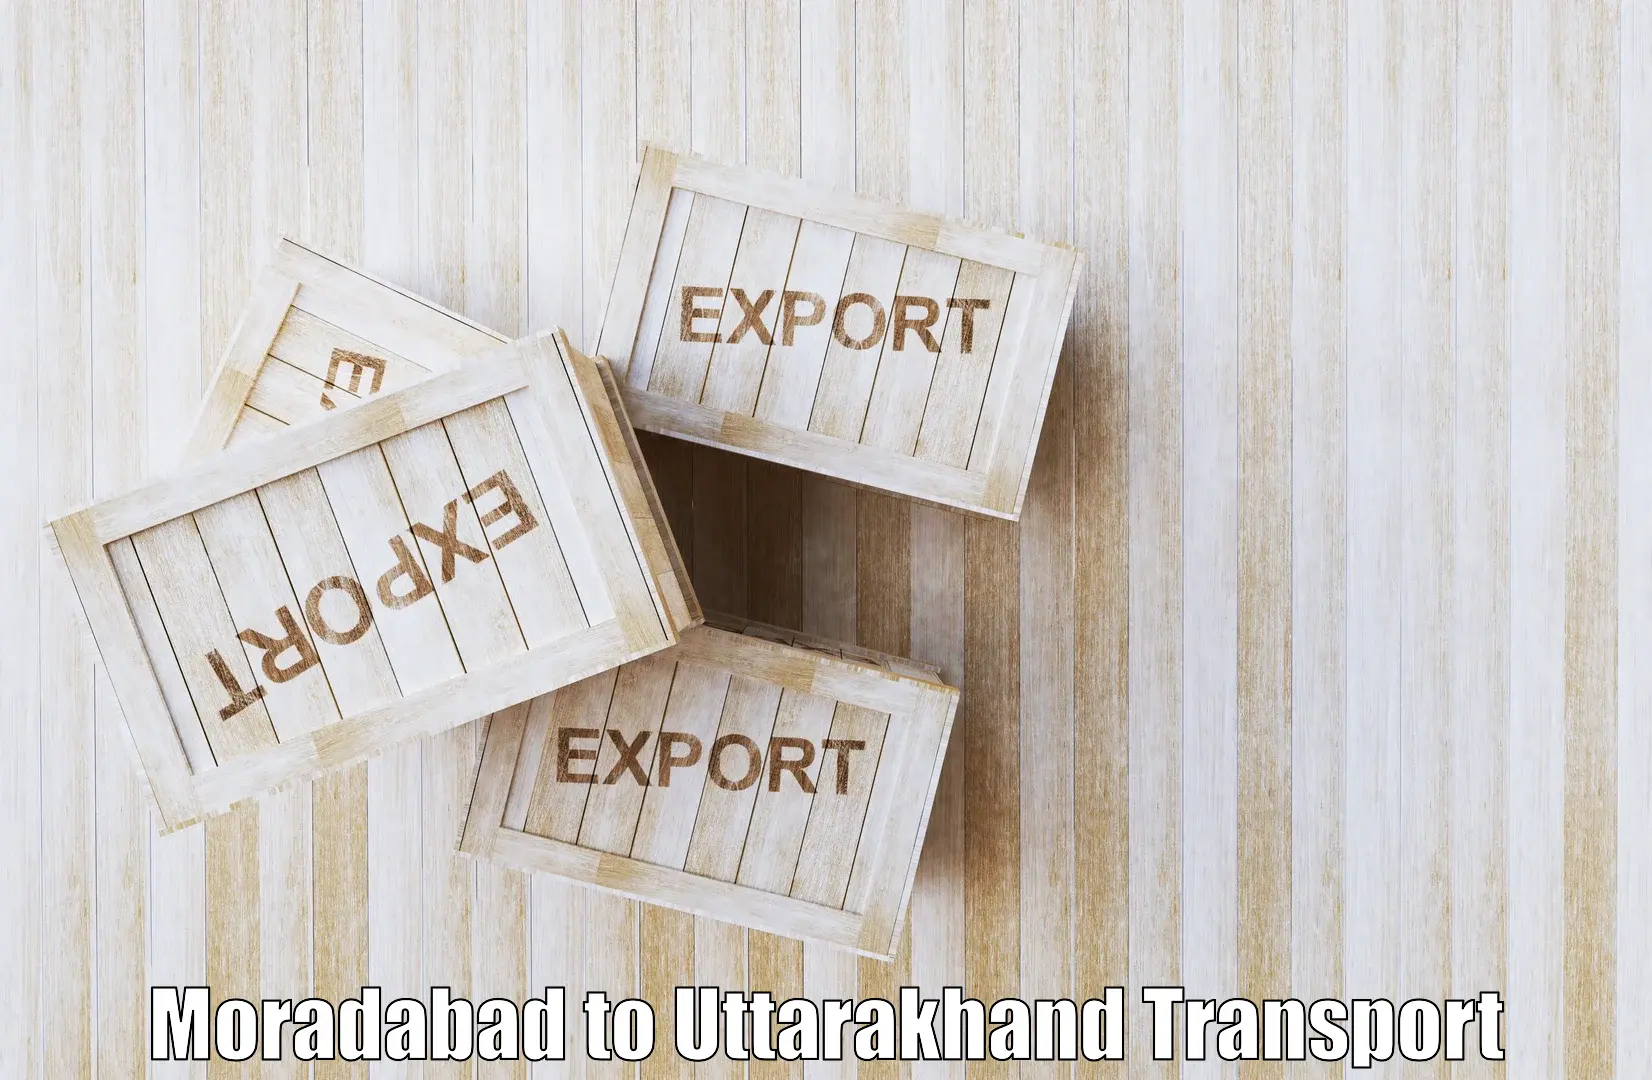 Lorry transport service Moradabad to Kotdwara